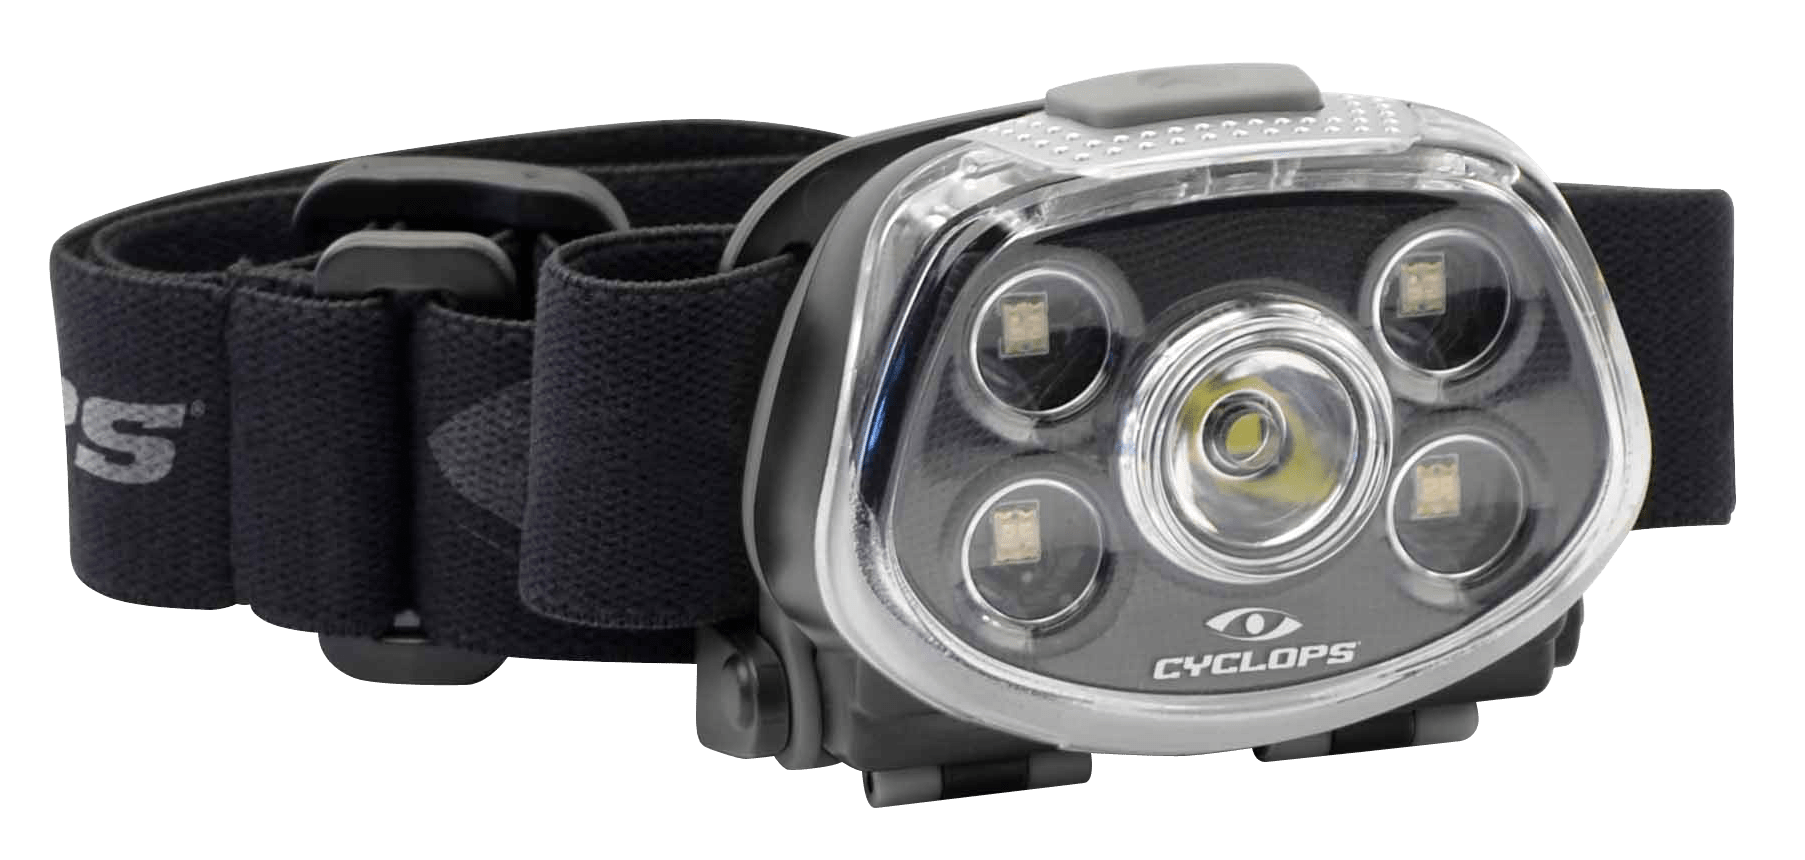 900 Lumens 10 Watt LED Spotlight - Cyclops